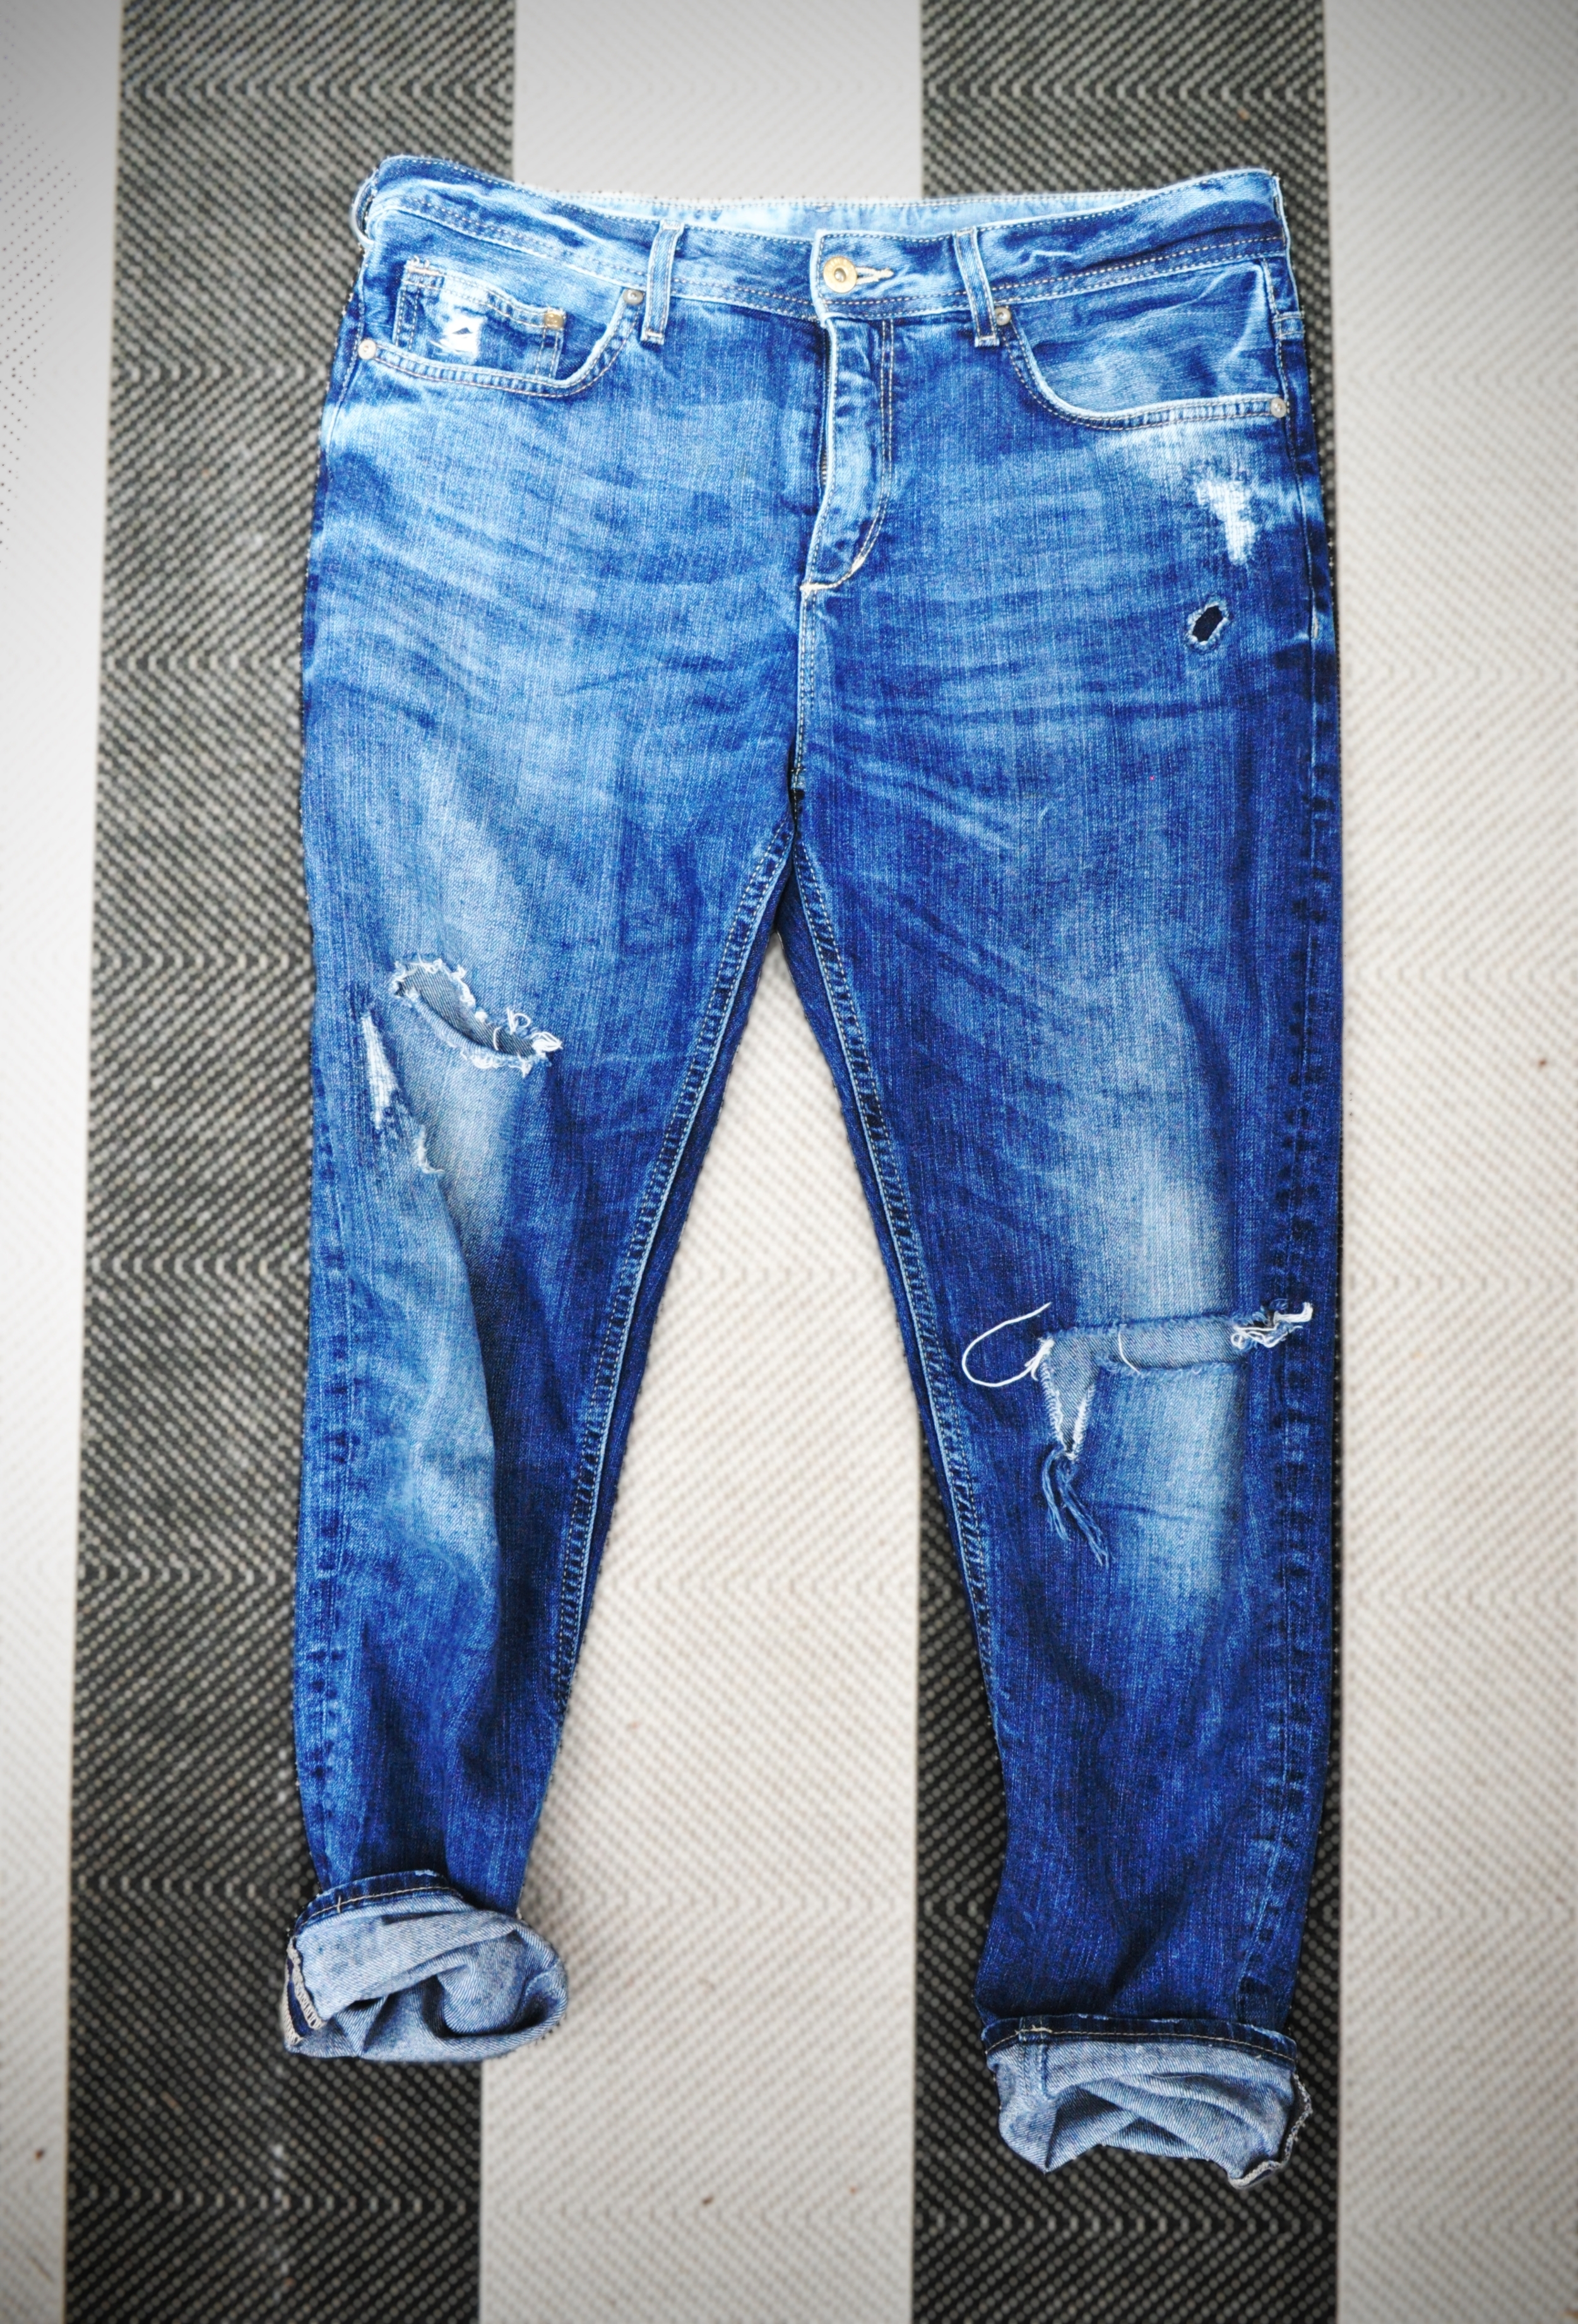 boyfriend jeans 2.jpg